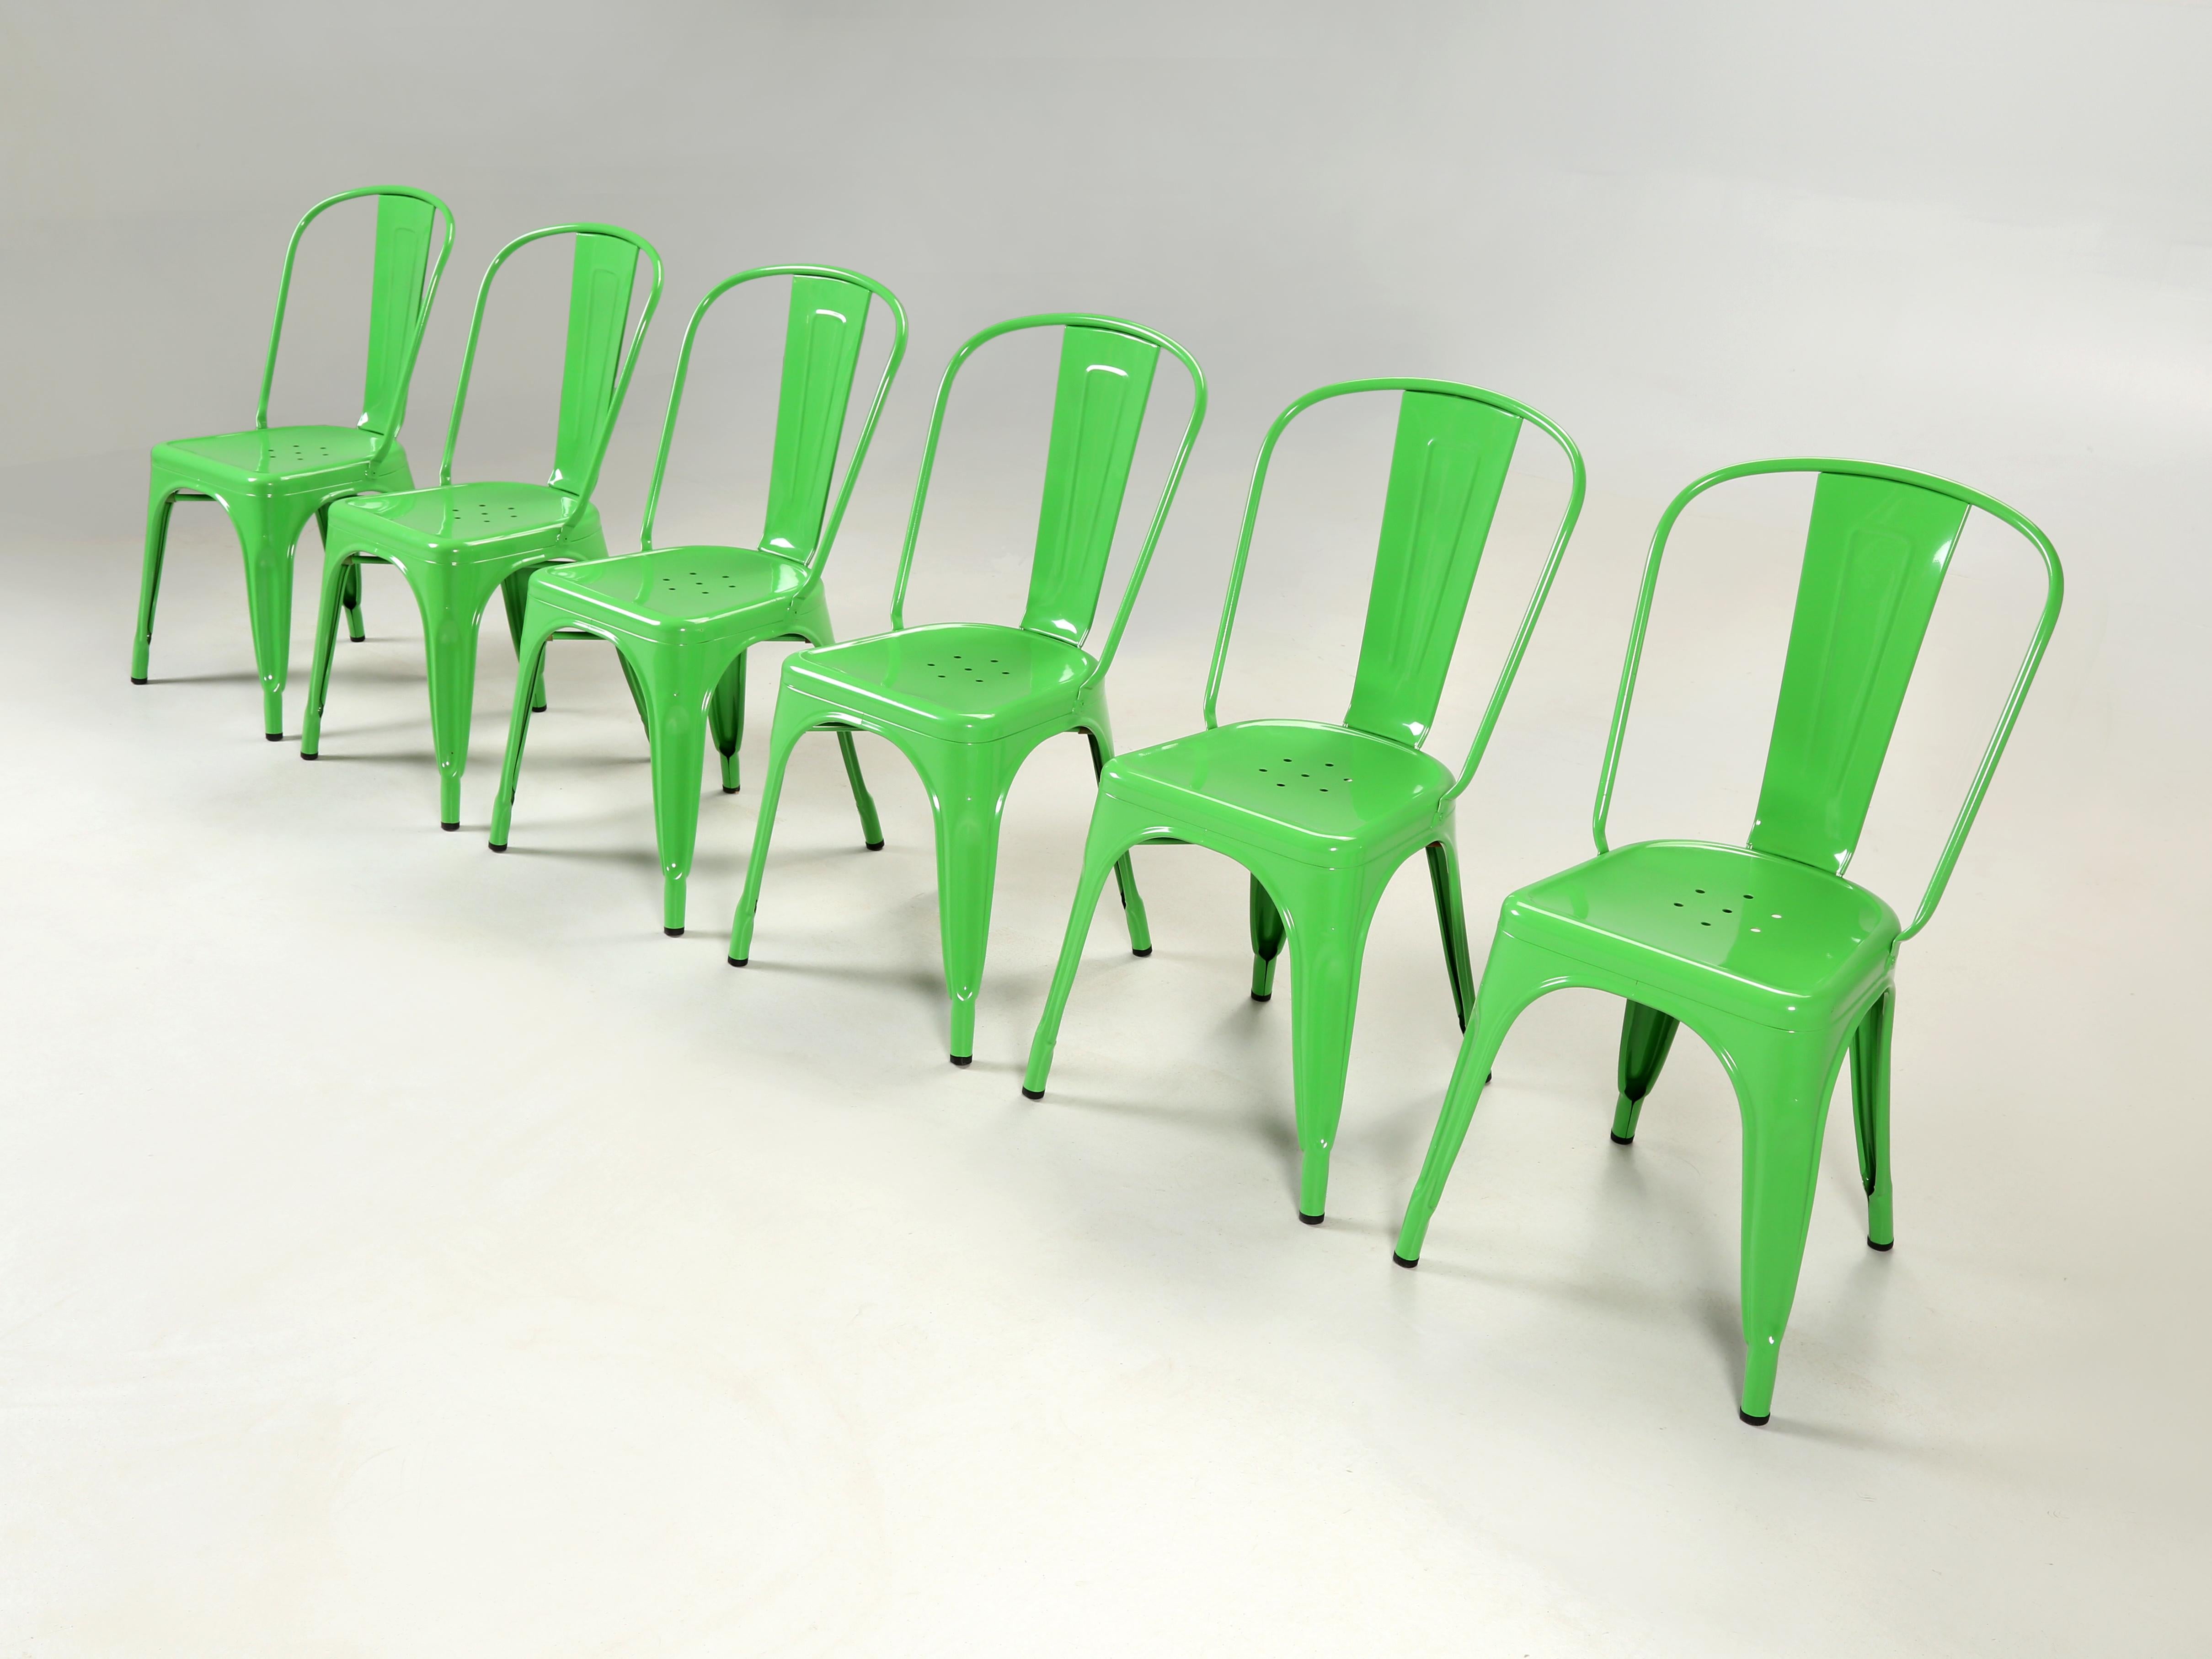 Echte französische Tolix-Stühle, die so konzipiert wurden, dass man die Stahlstühle sicher (laut Tolix) zwölfmal übereinander stapeln kann. Derzeit haben wir über (1500) authentische französische Tolix auf Lager, aber nur ein Set von (6) hellgrünen